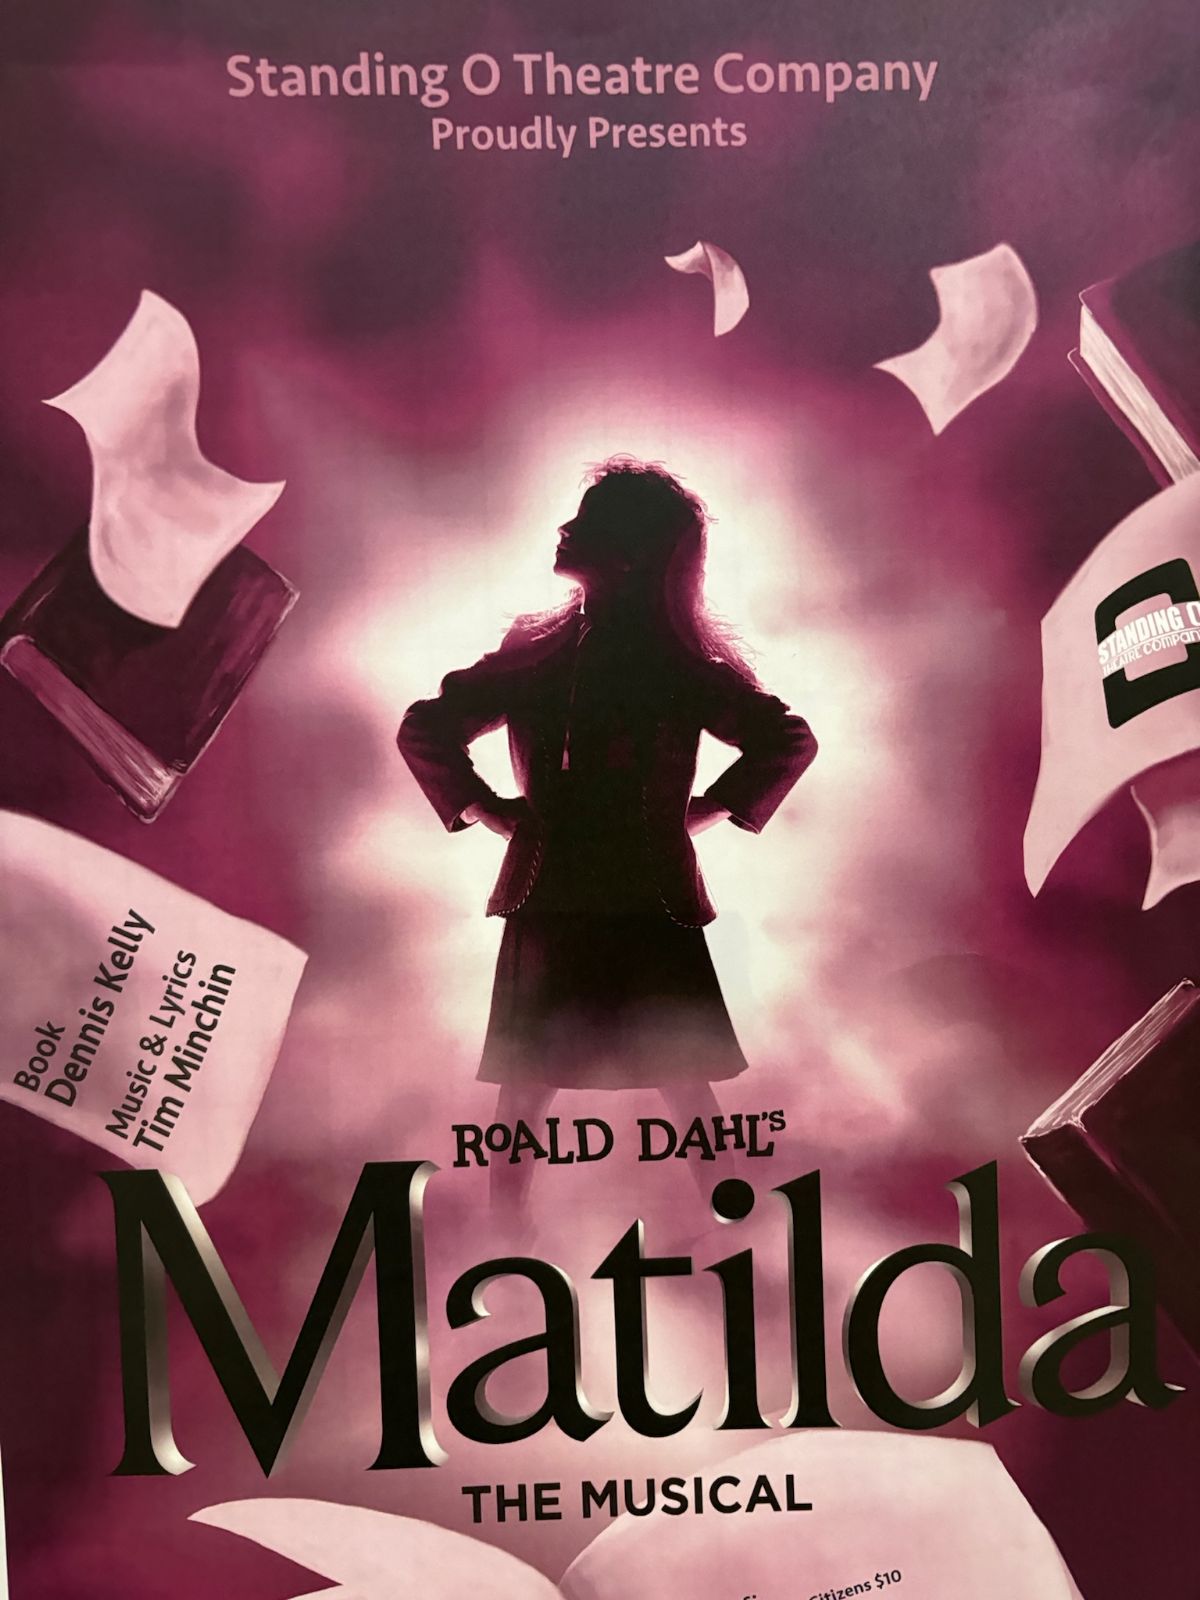 SOTC Presents: Matilda 